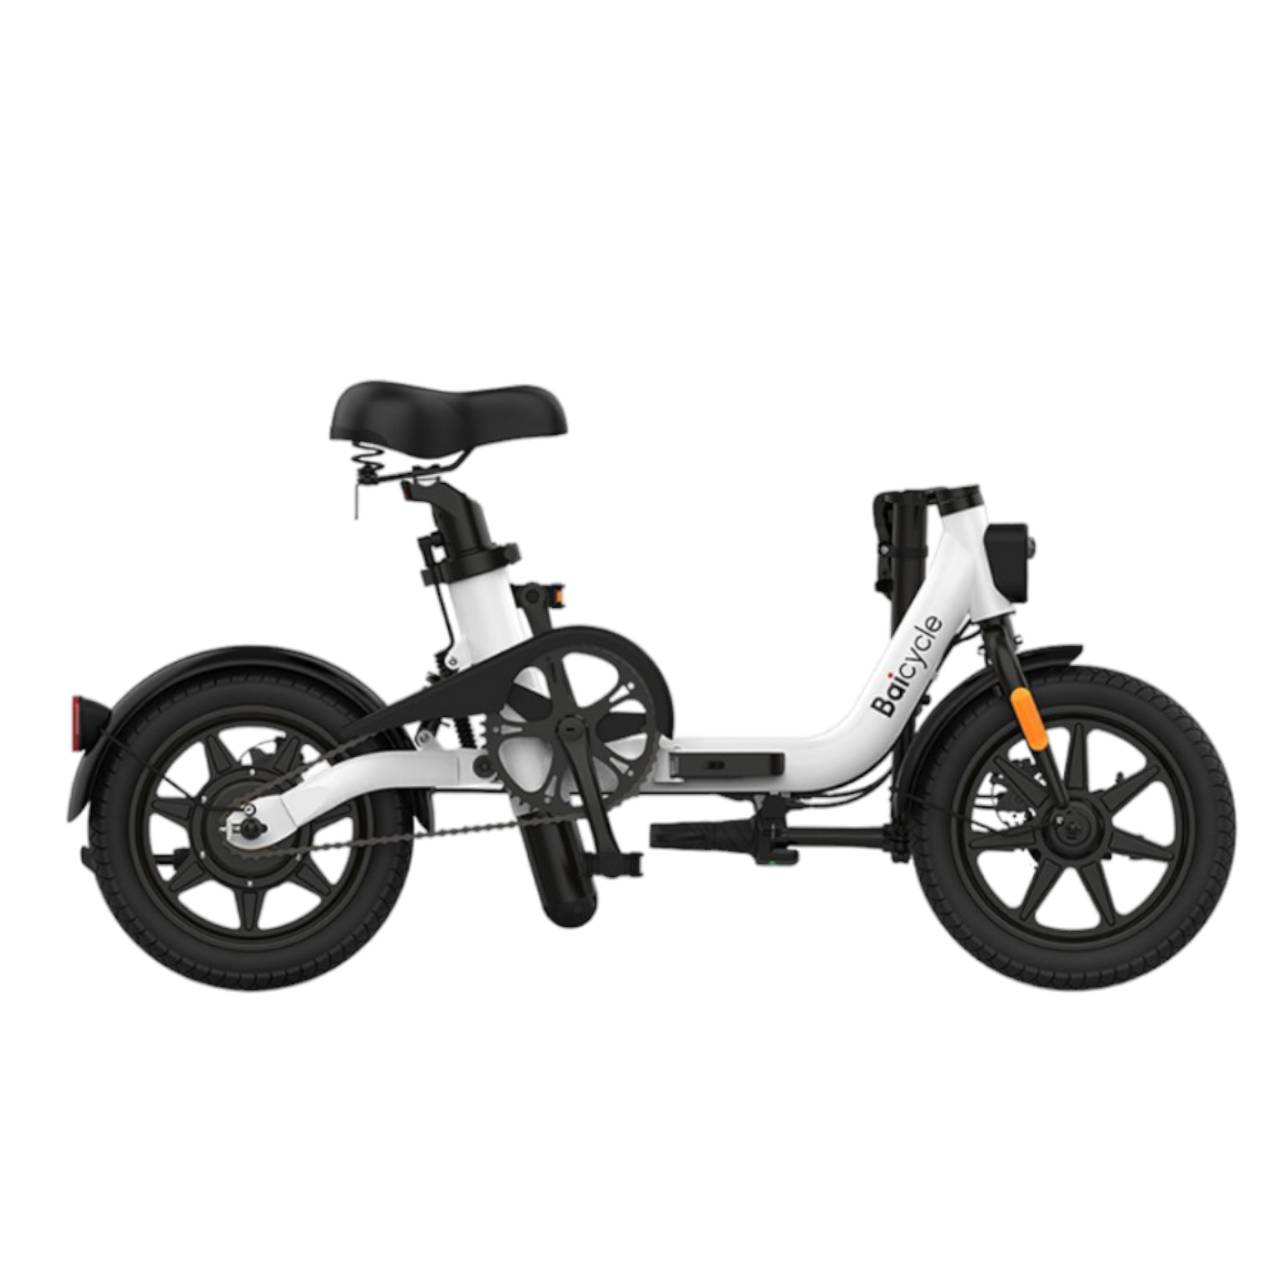 U8 電動輔助自行車、電動腳踏車